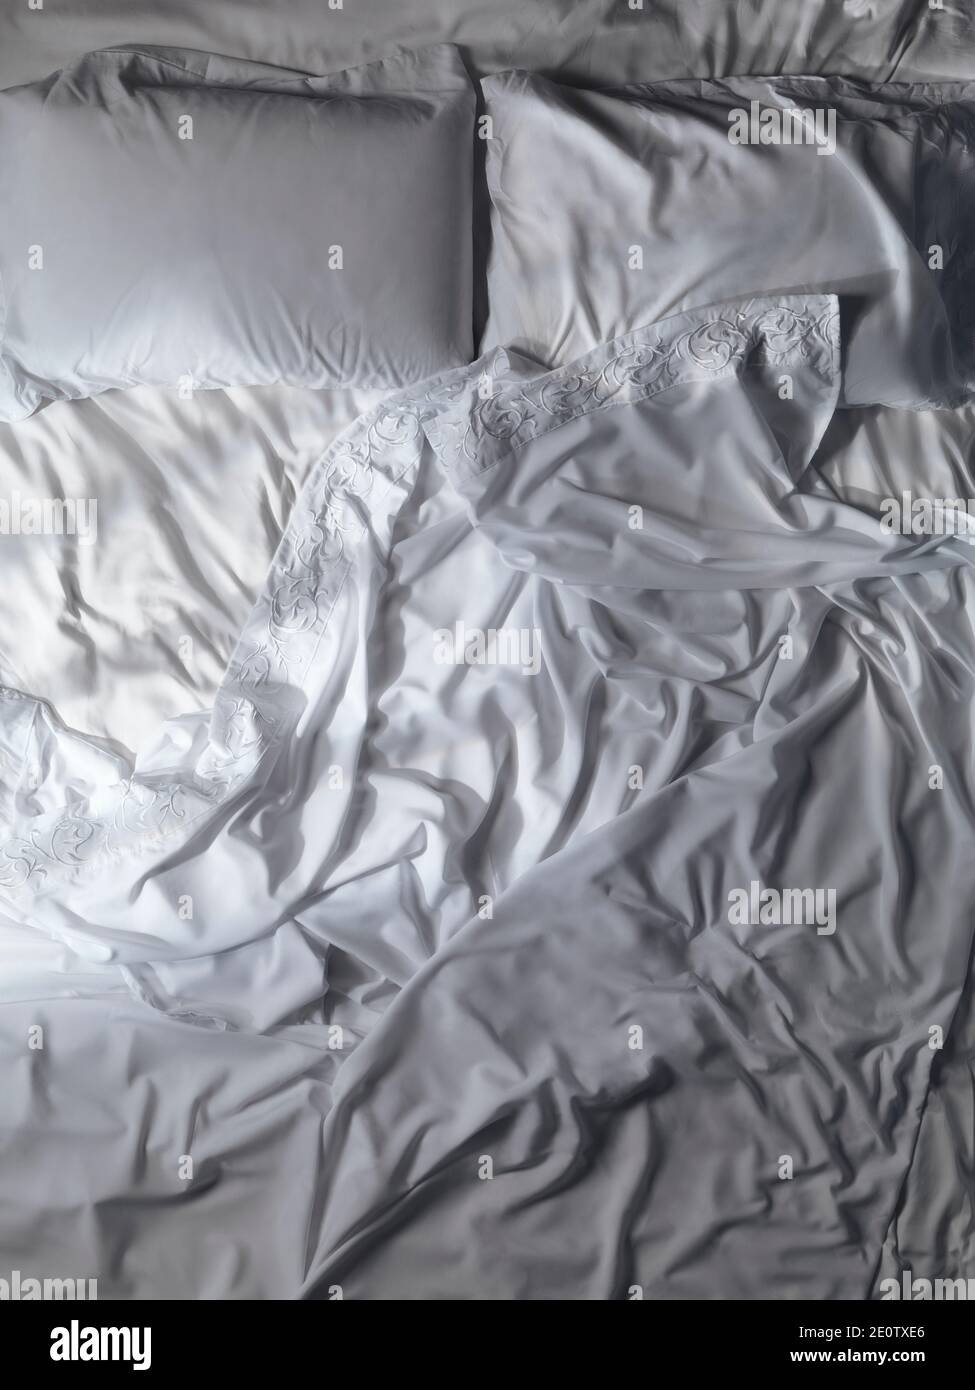 Letto vuoto non fatto, lenzuola e cuscini in pizzo bianco rugoso. Sfondo artistico, vista dall'alto. Foto Stock